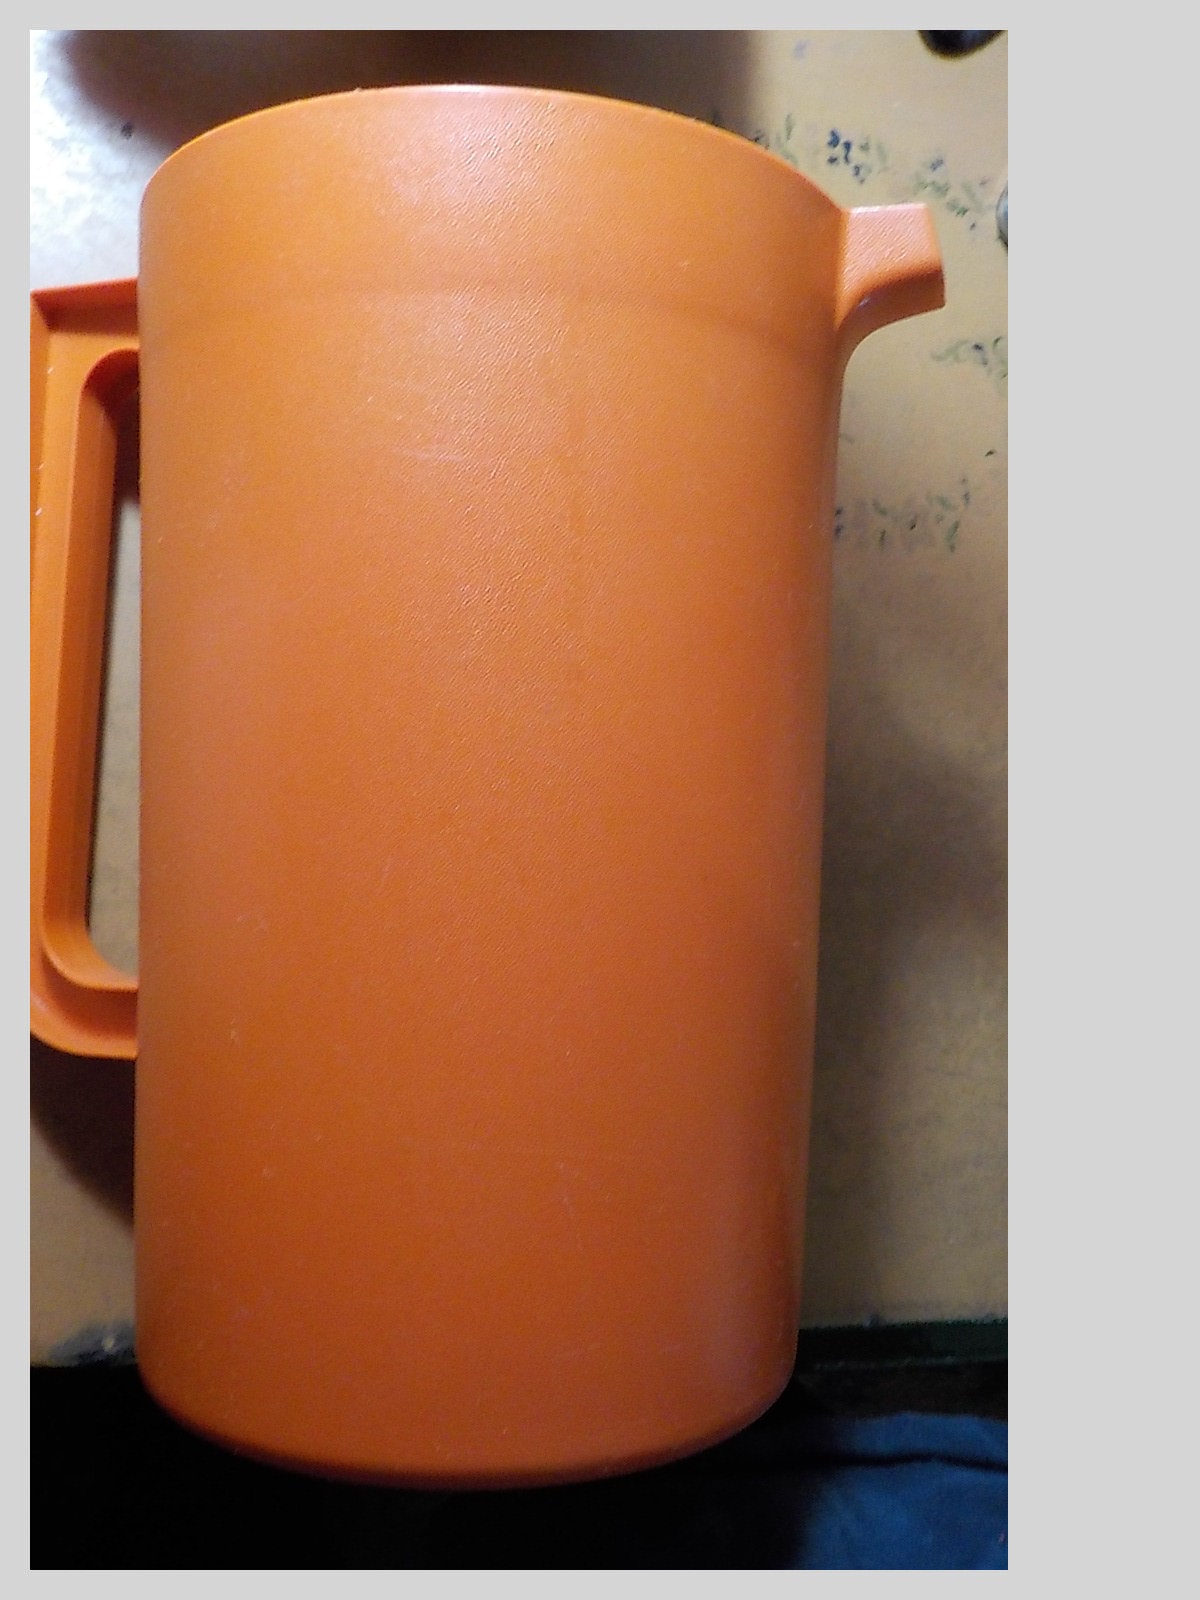 The classic Tupperware Pitcher: 2 quarts, Harvest Orange : r